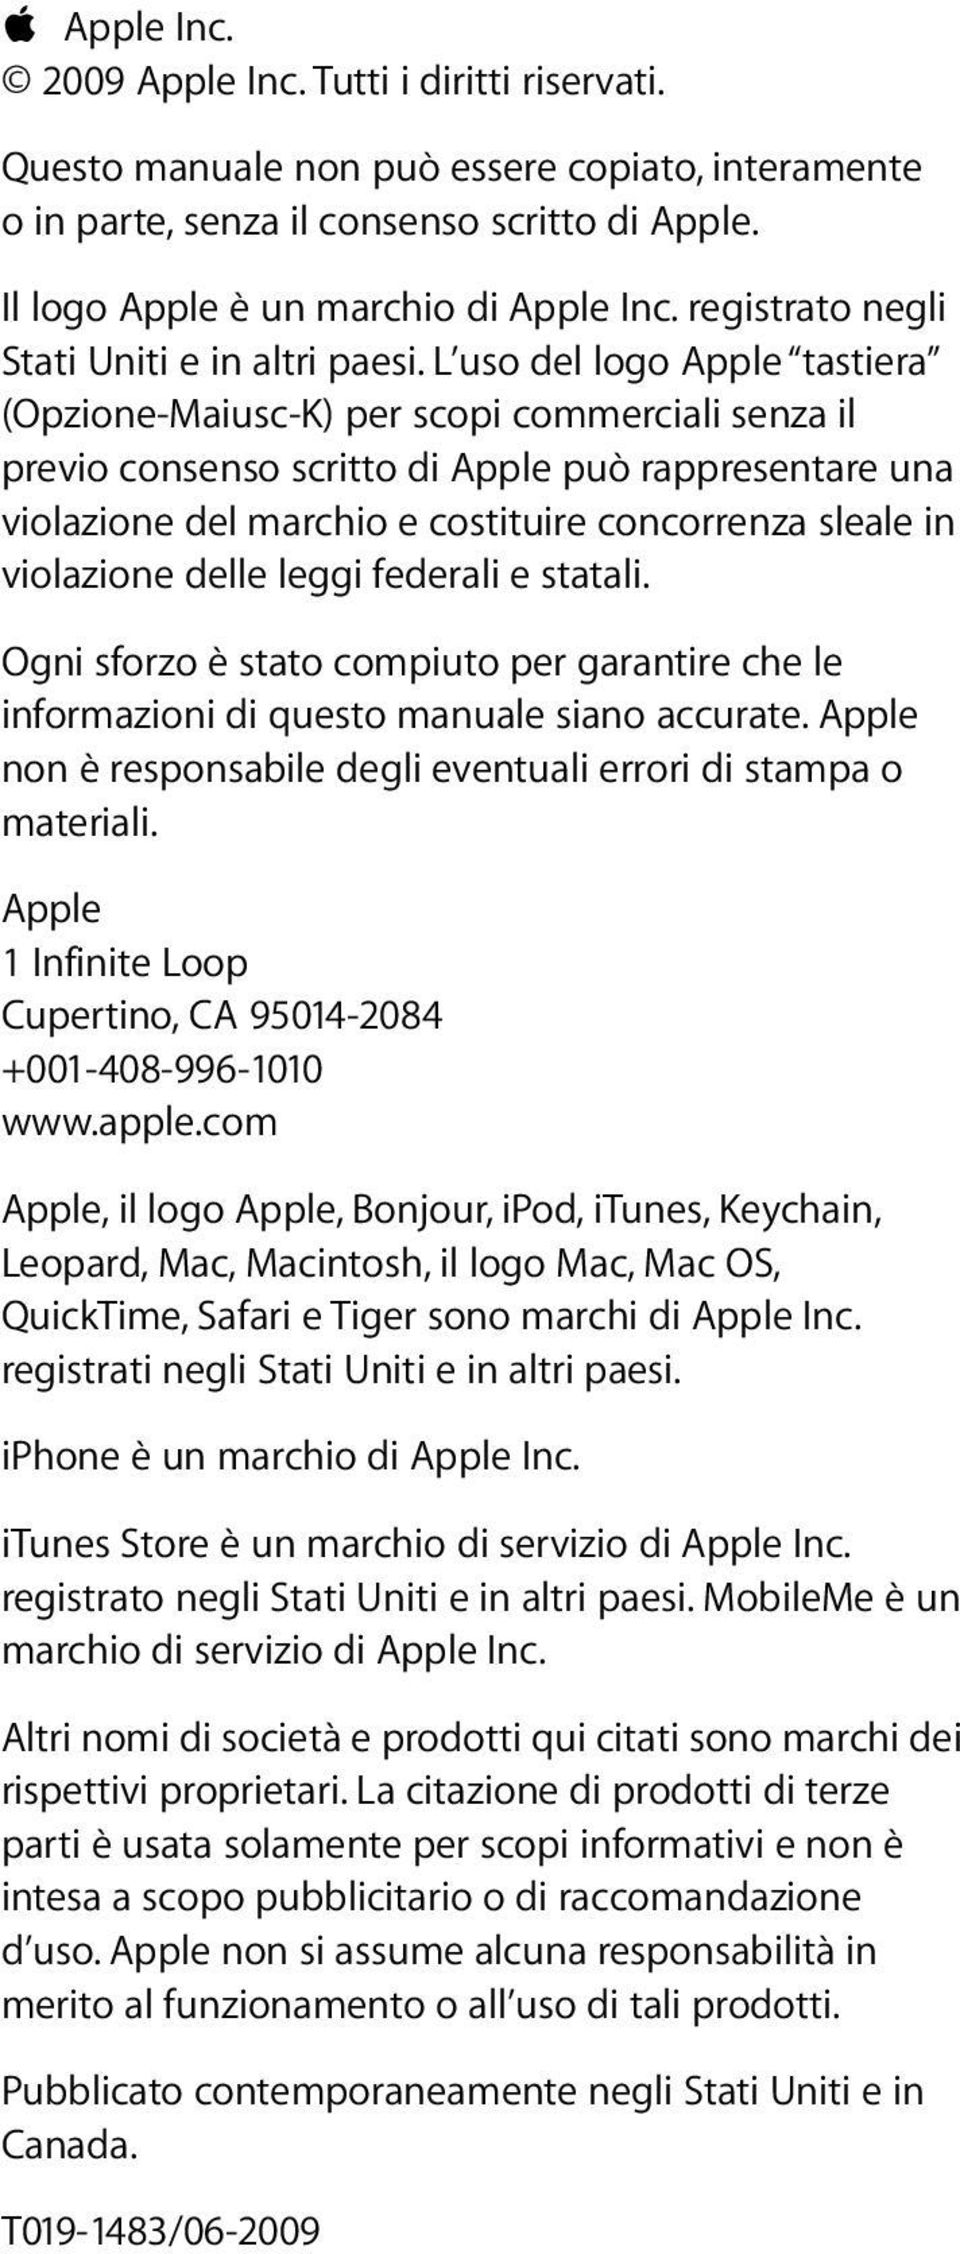 L uso del logo Apple tastiera (Opzione-Maiusc-K) per scopi commerciali senza il previo consenso scritto di Apple può rappresentare una violazione del marchio e costituire concorrenza sleale in